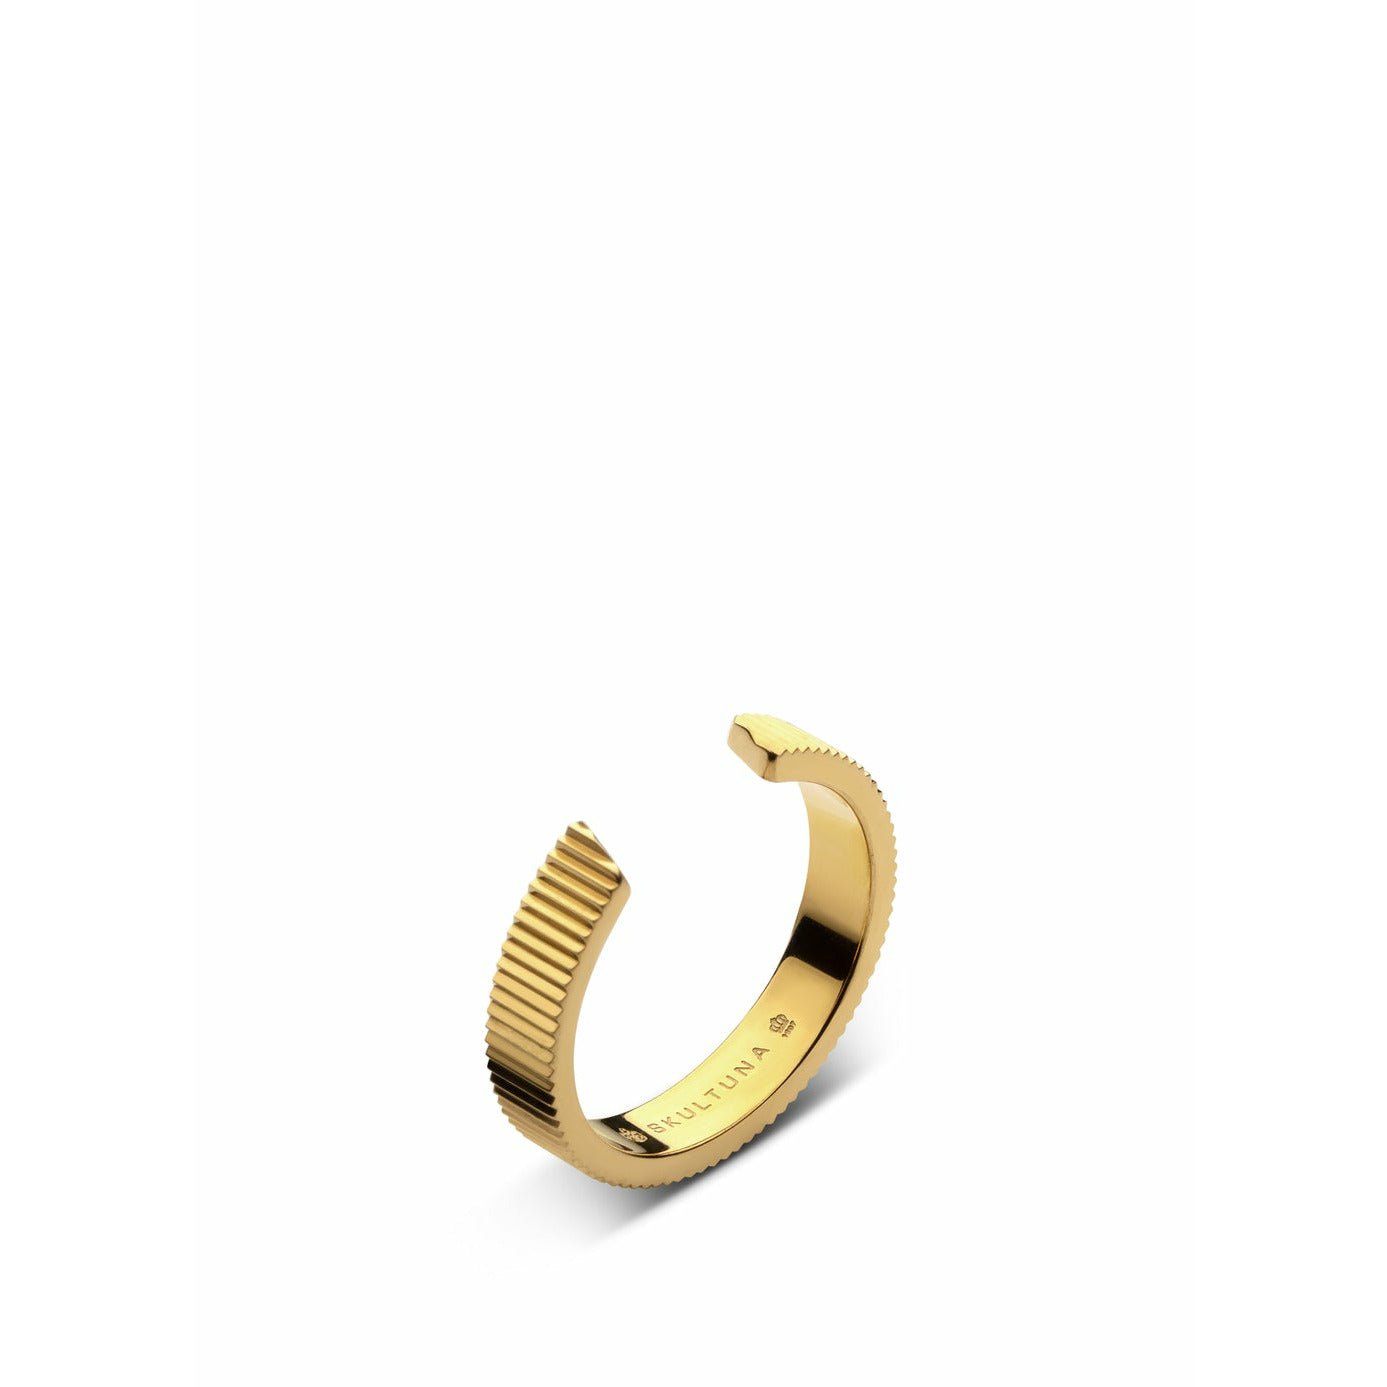 Skultuna gerippter Ring mittel kleiner 316 l Stahl Gold plattiert, Ø1,6 cm